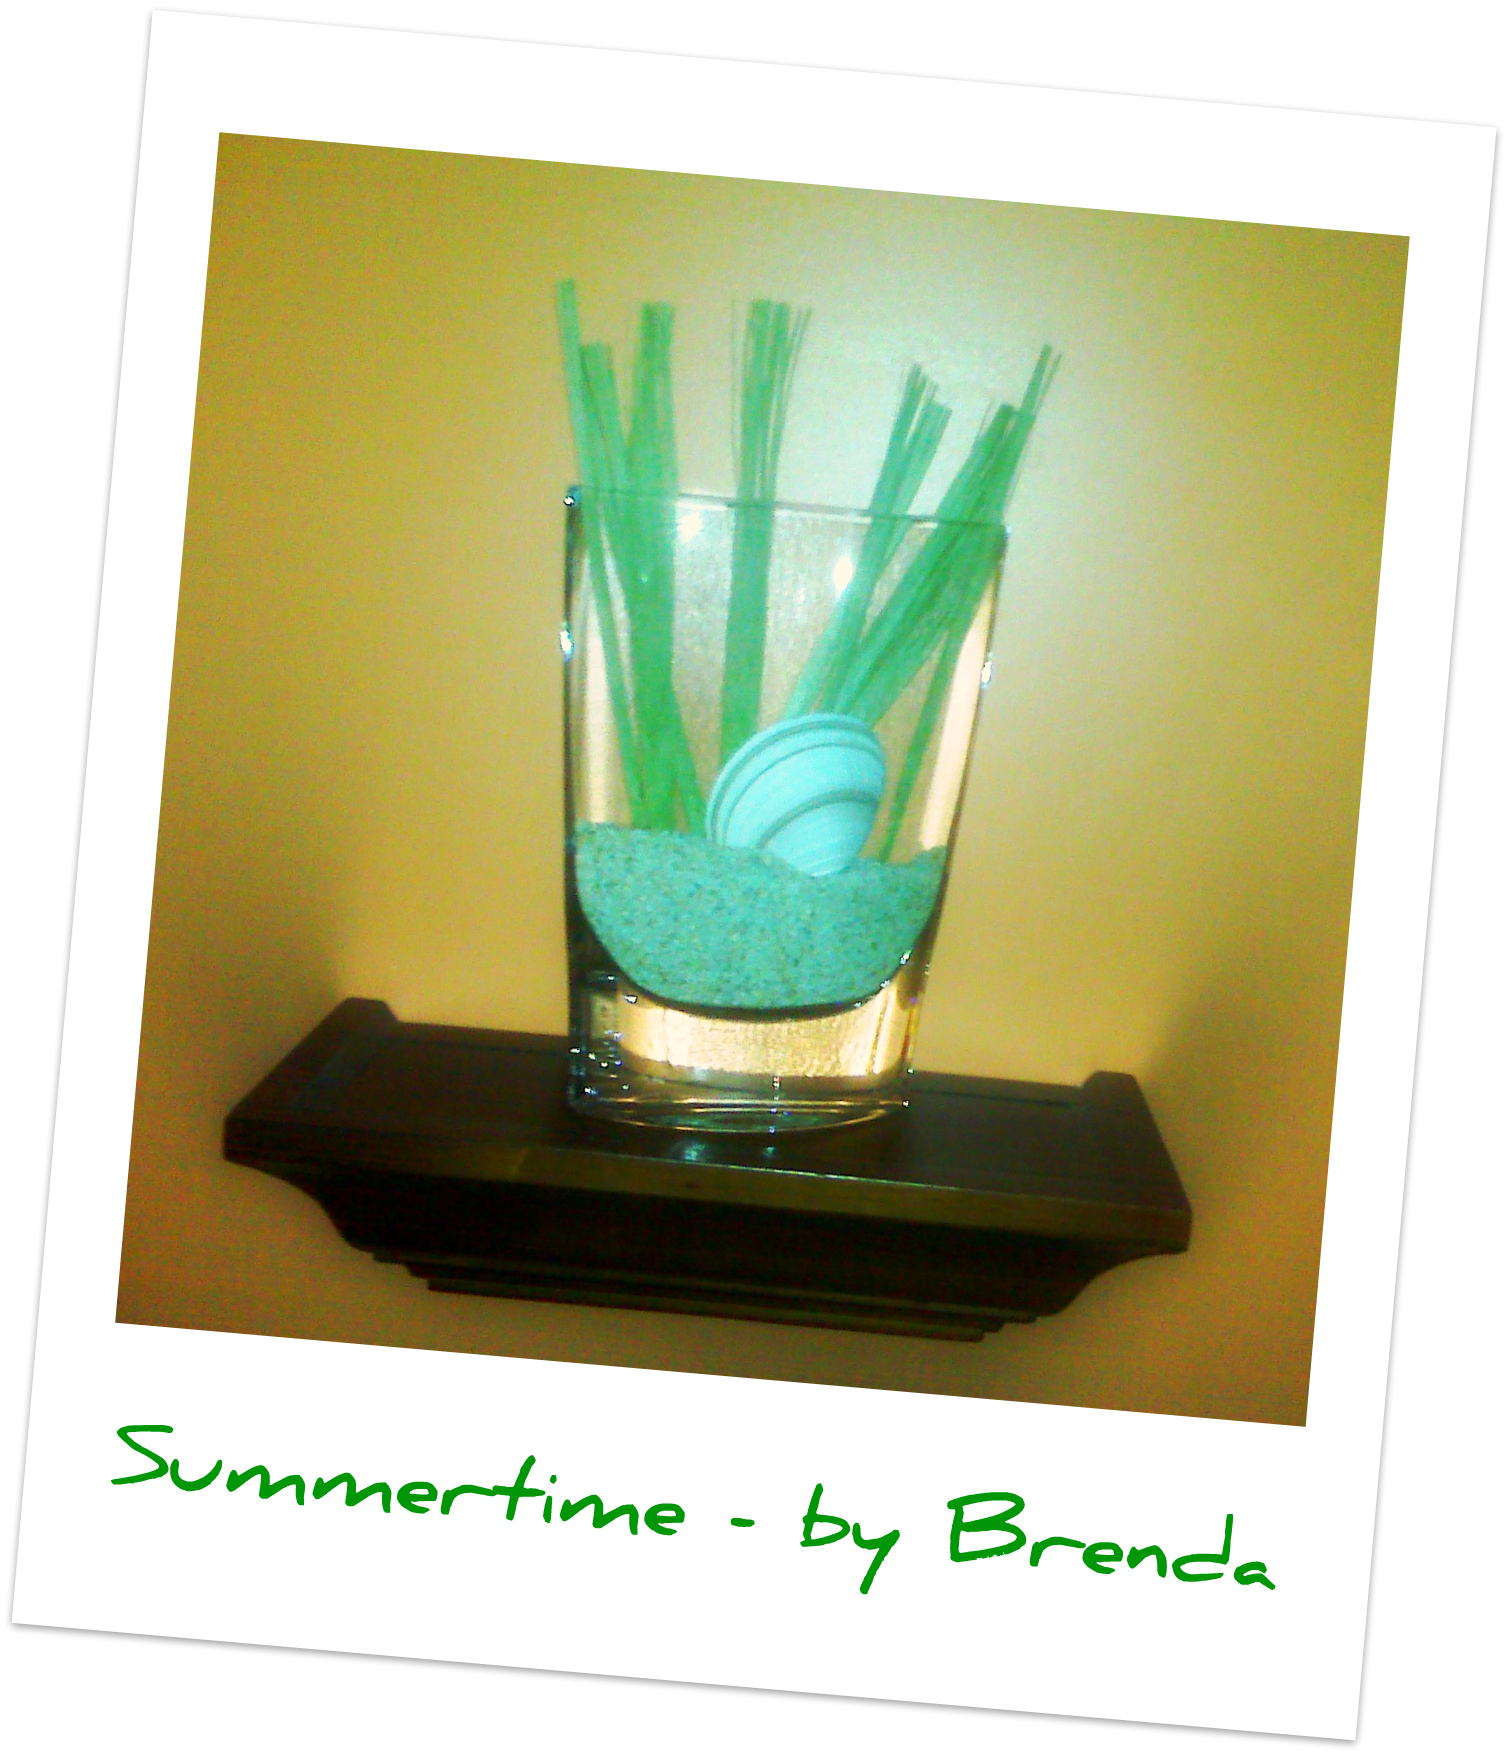 Summertime - by Brenda